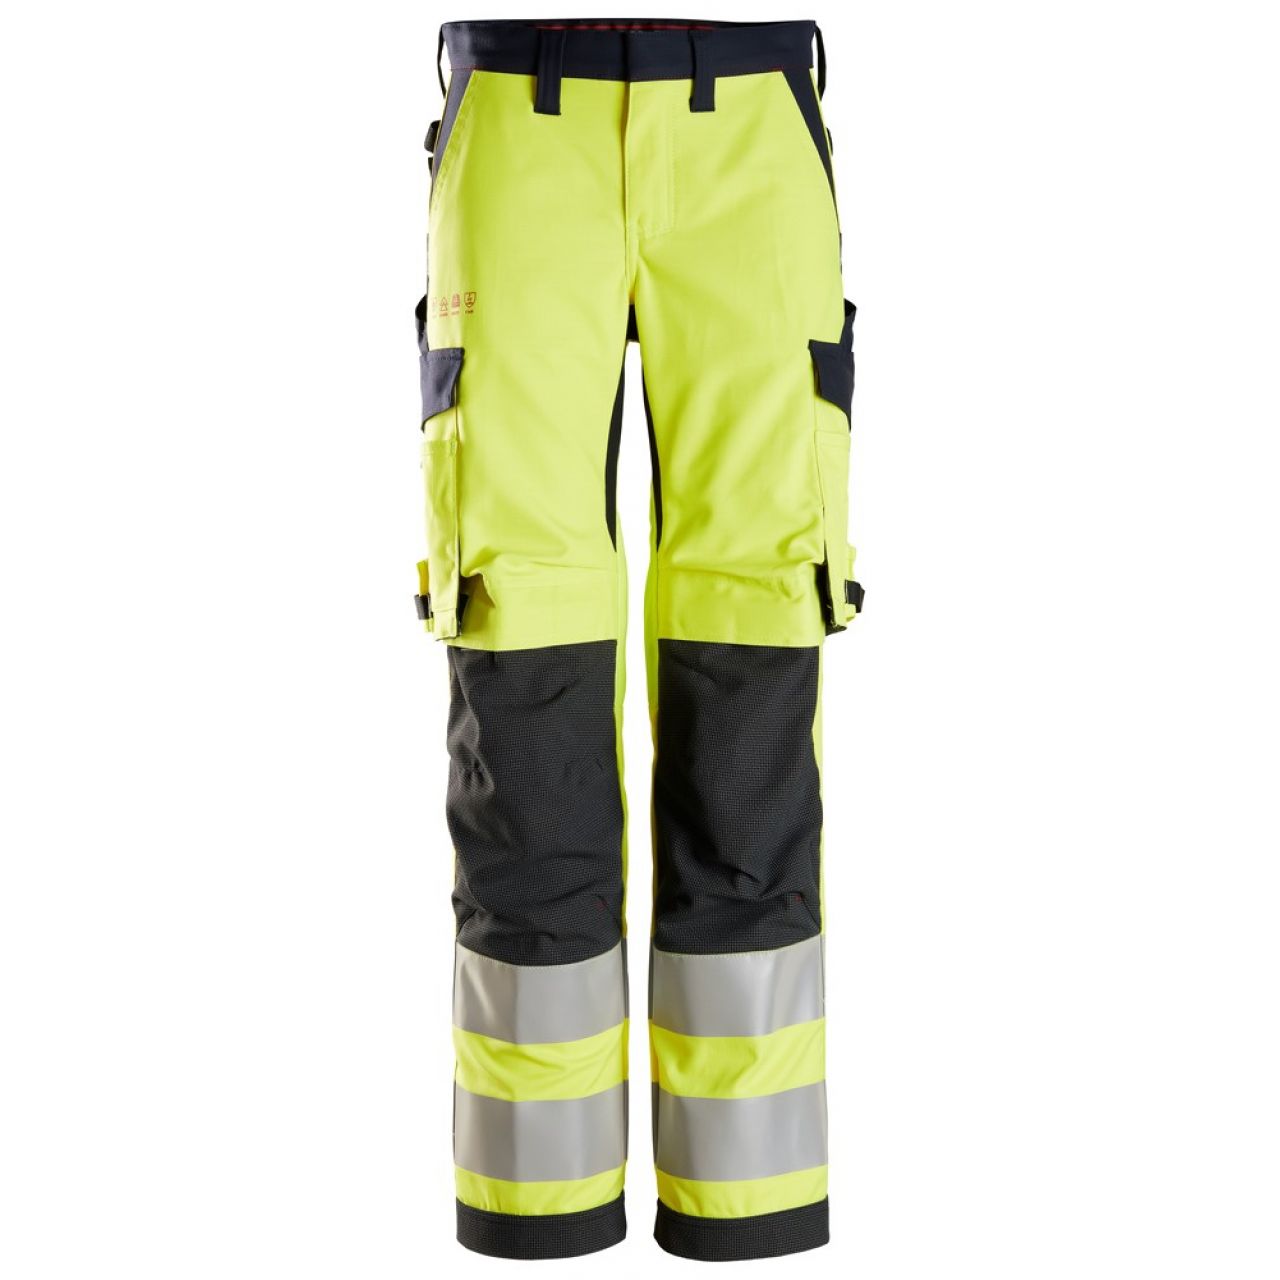 6760 Pantalones largos de trabajo de alta visibilidad clase 2 para mujer ProtecWork amarillo-azul marino talla 22